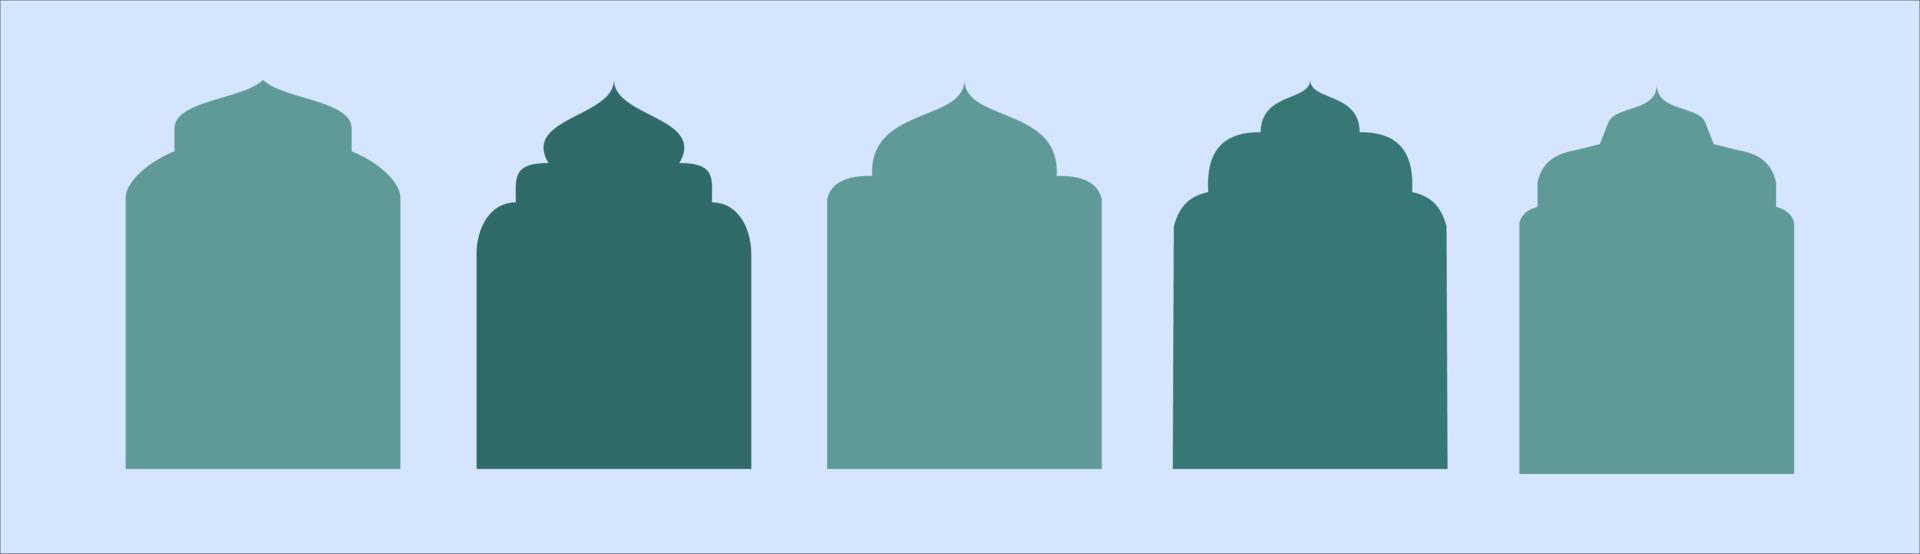 collezione di finestre e archi islamici ramadan kareem in stile orientale con un design in stile moderno, moschea porta, cupola della moschea e lanterne. illustrazione del ramadan. vettore